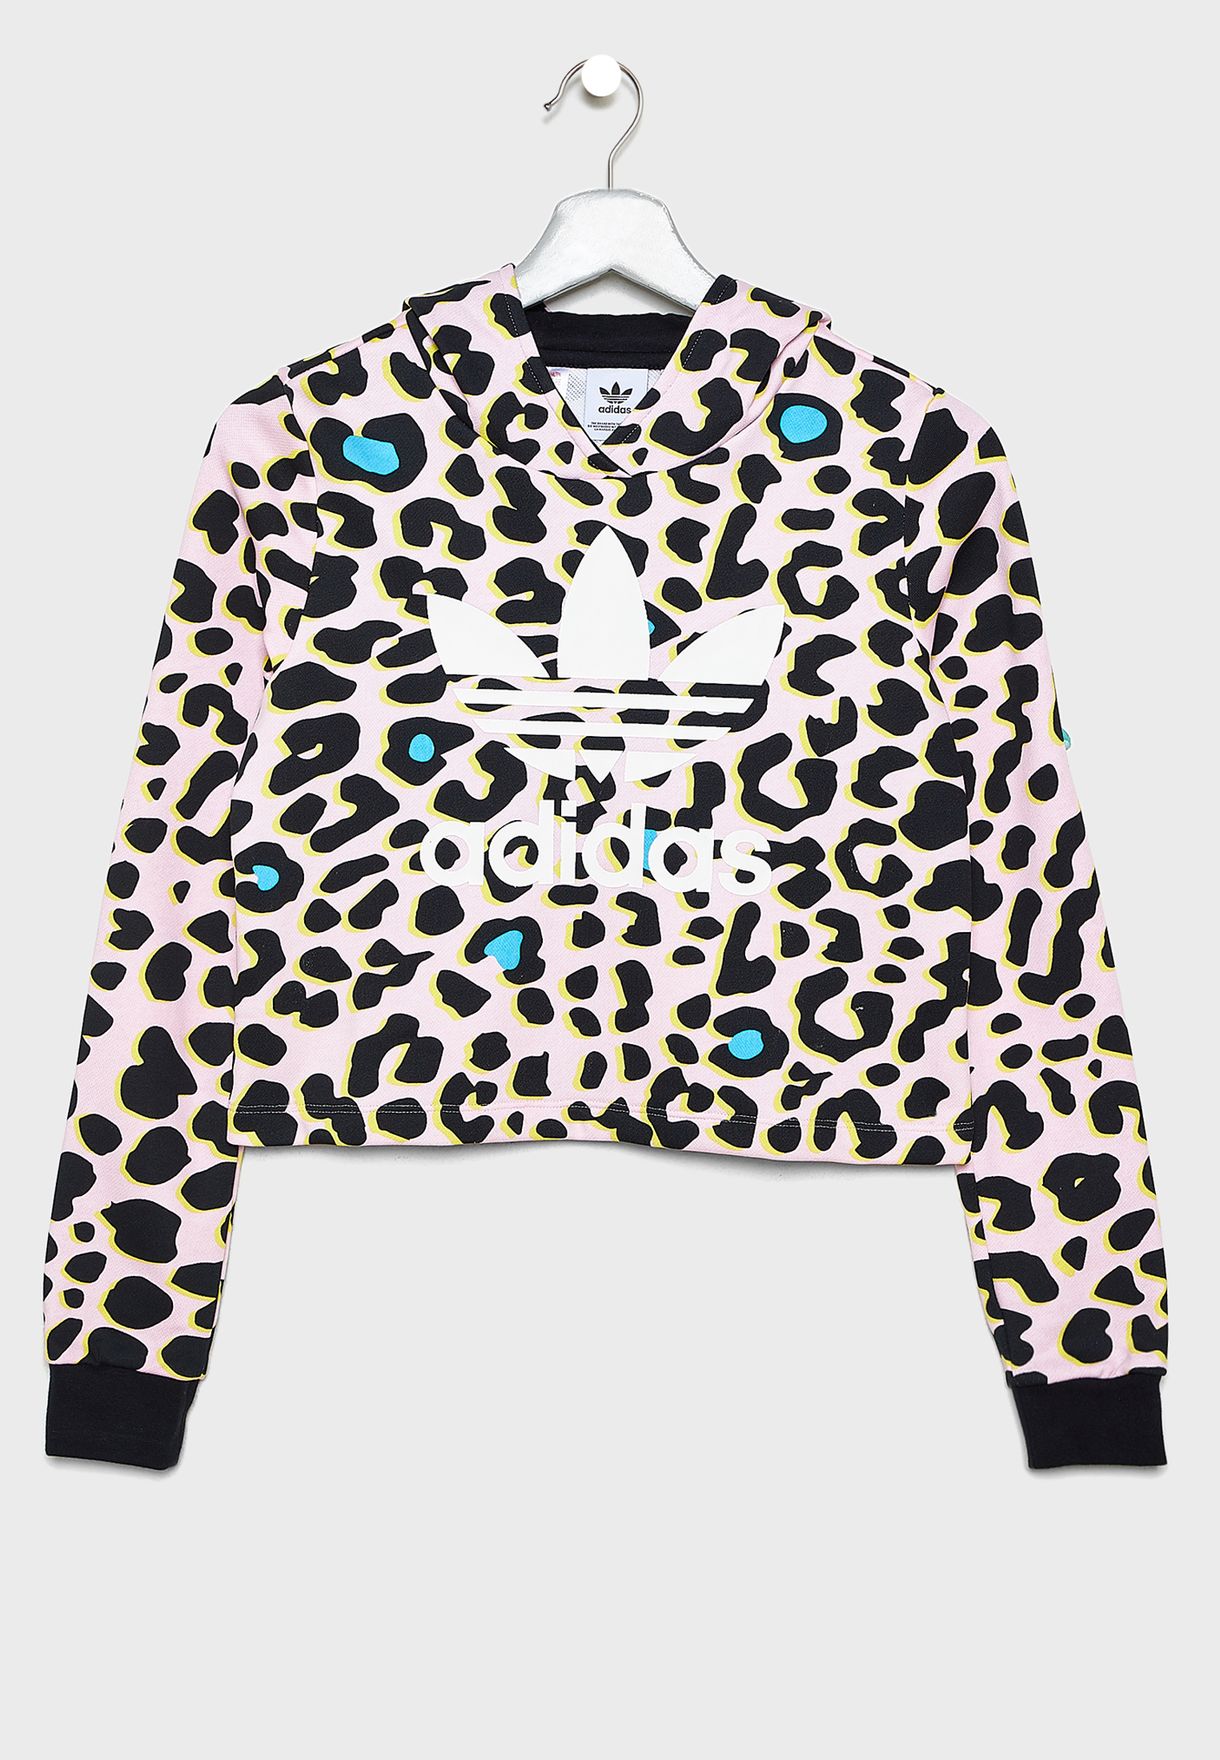 adidas leopard hoodie